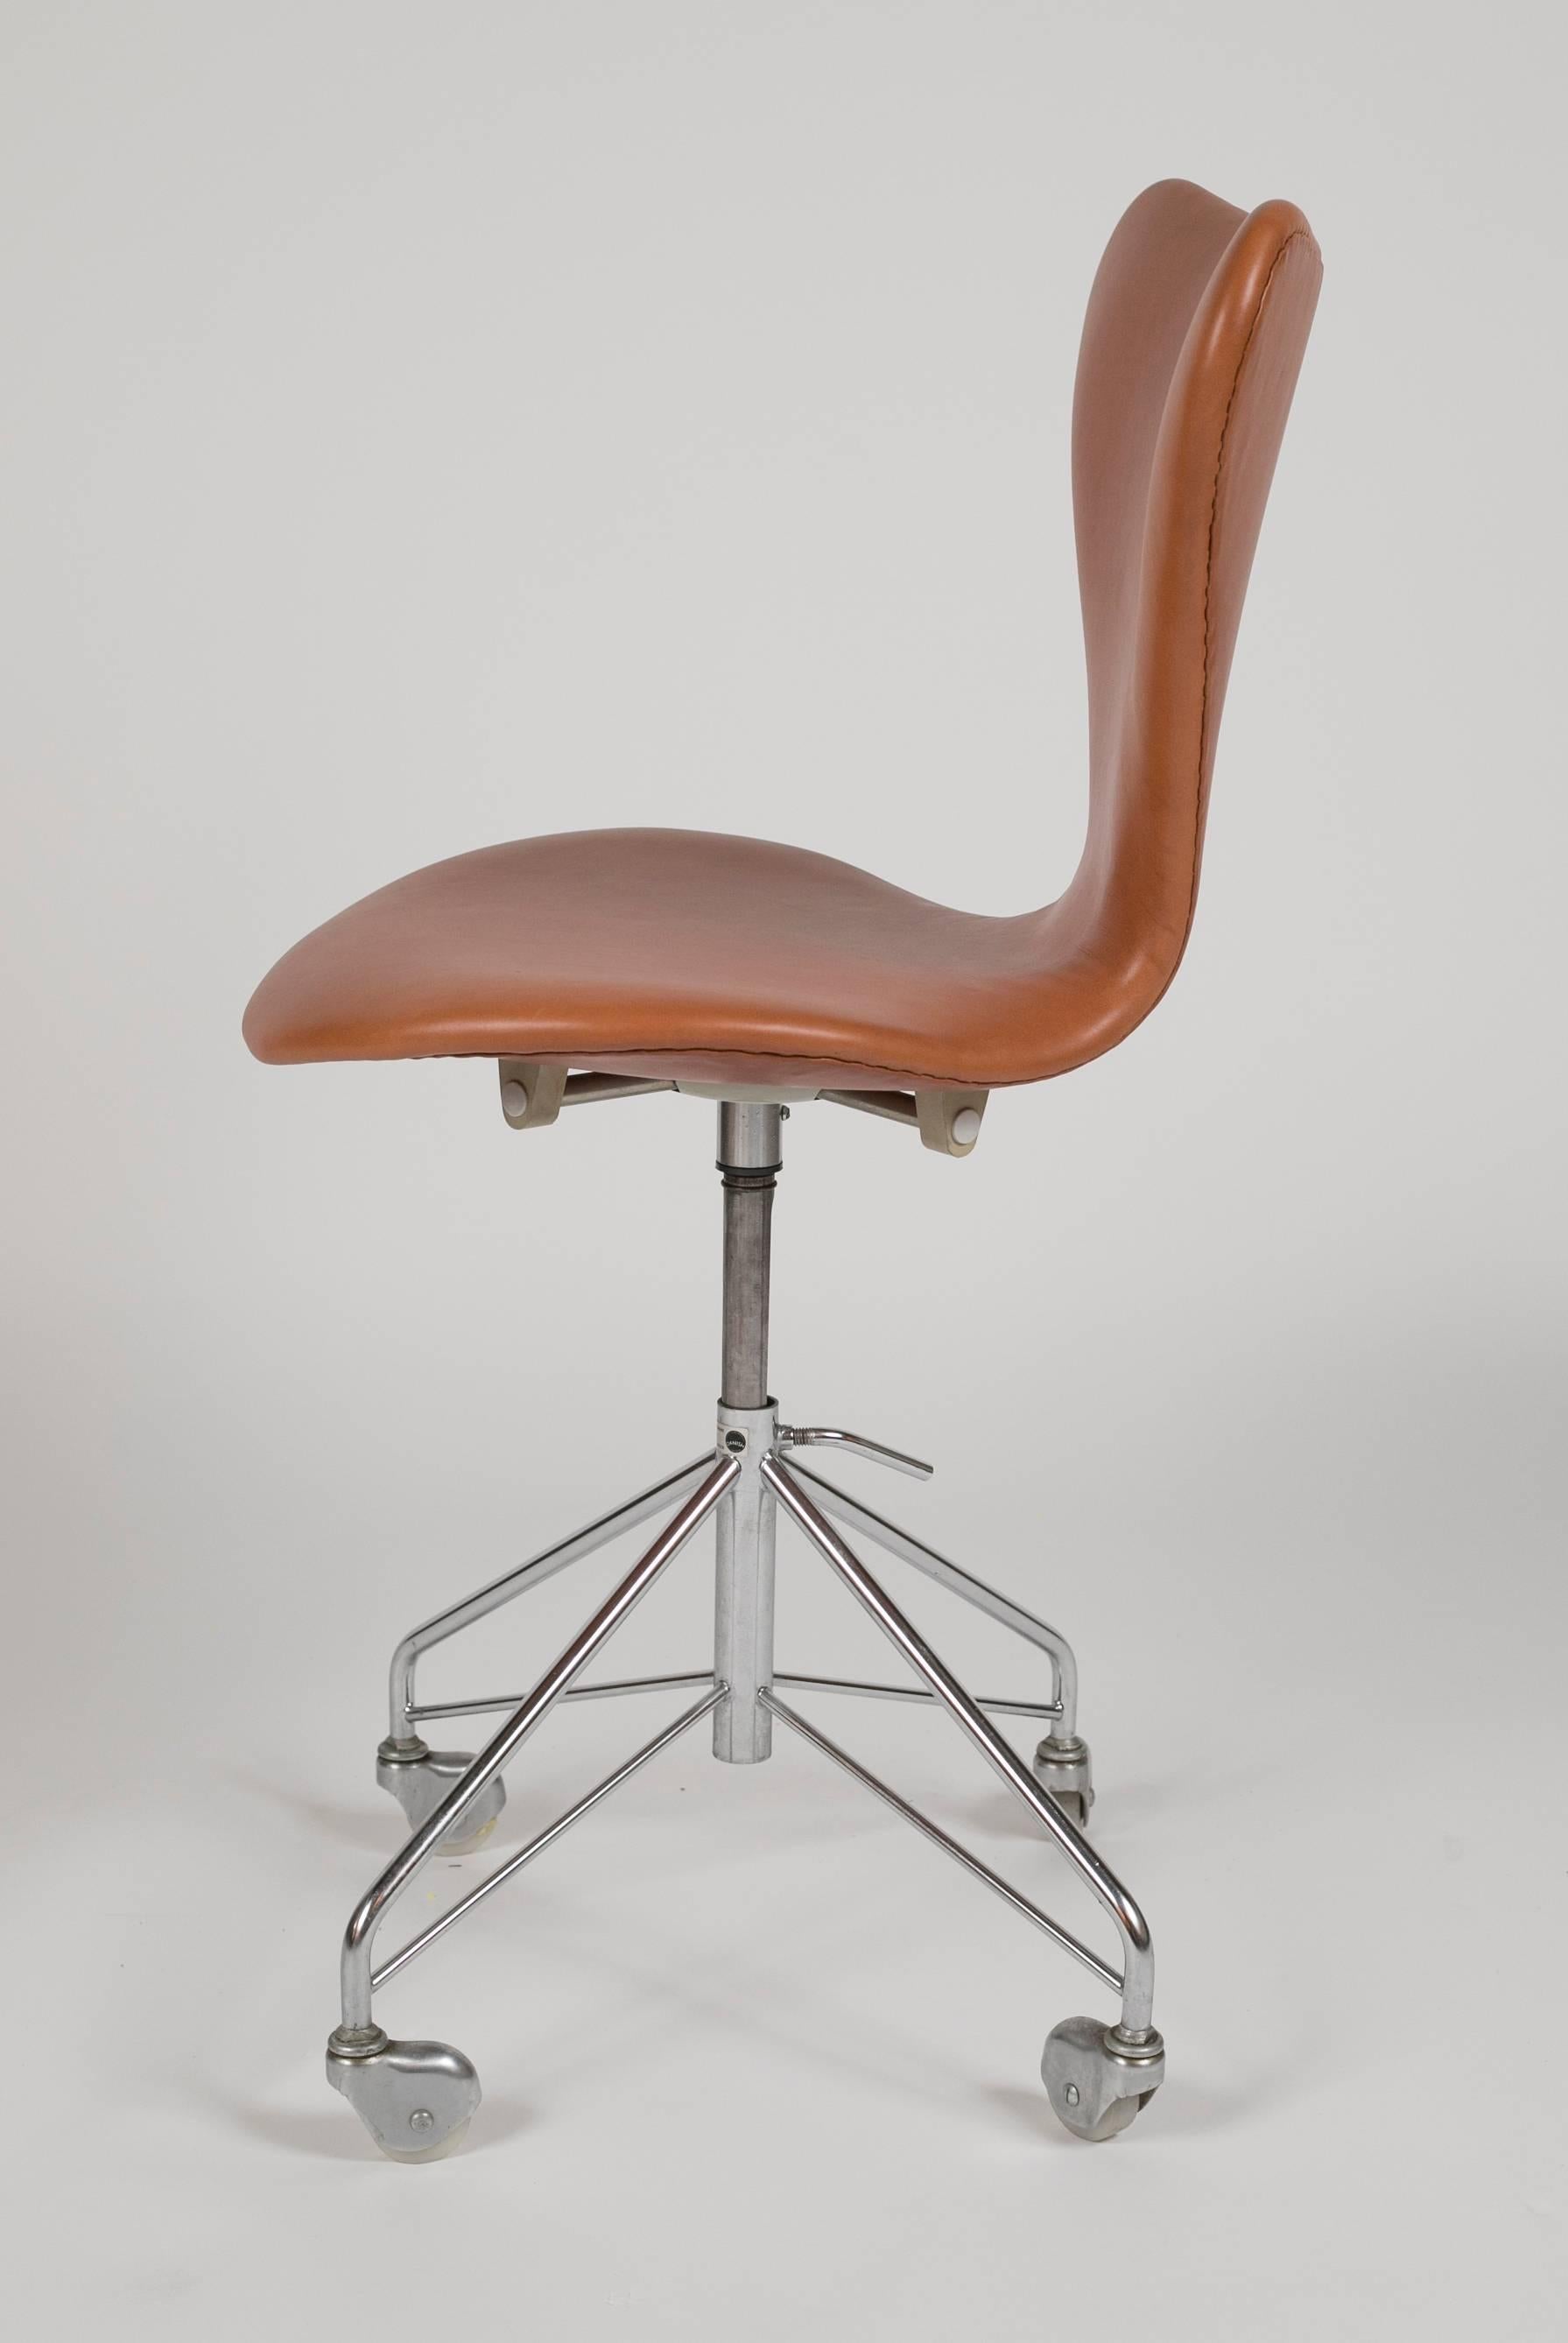 Mid-Century Modern Model 3117 Leather Swivel Desk Chair by Arne Jacobsen for Fritz Hansen